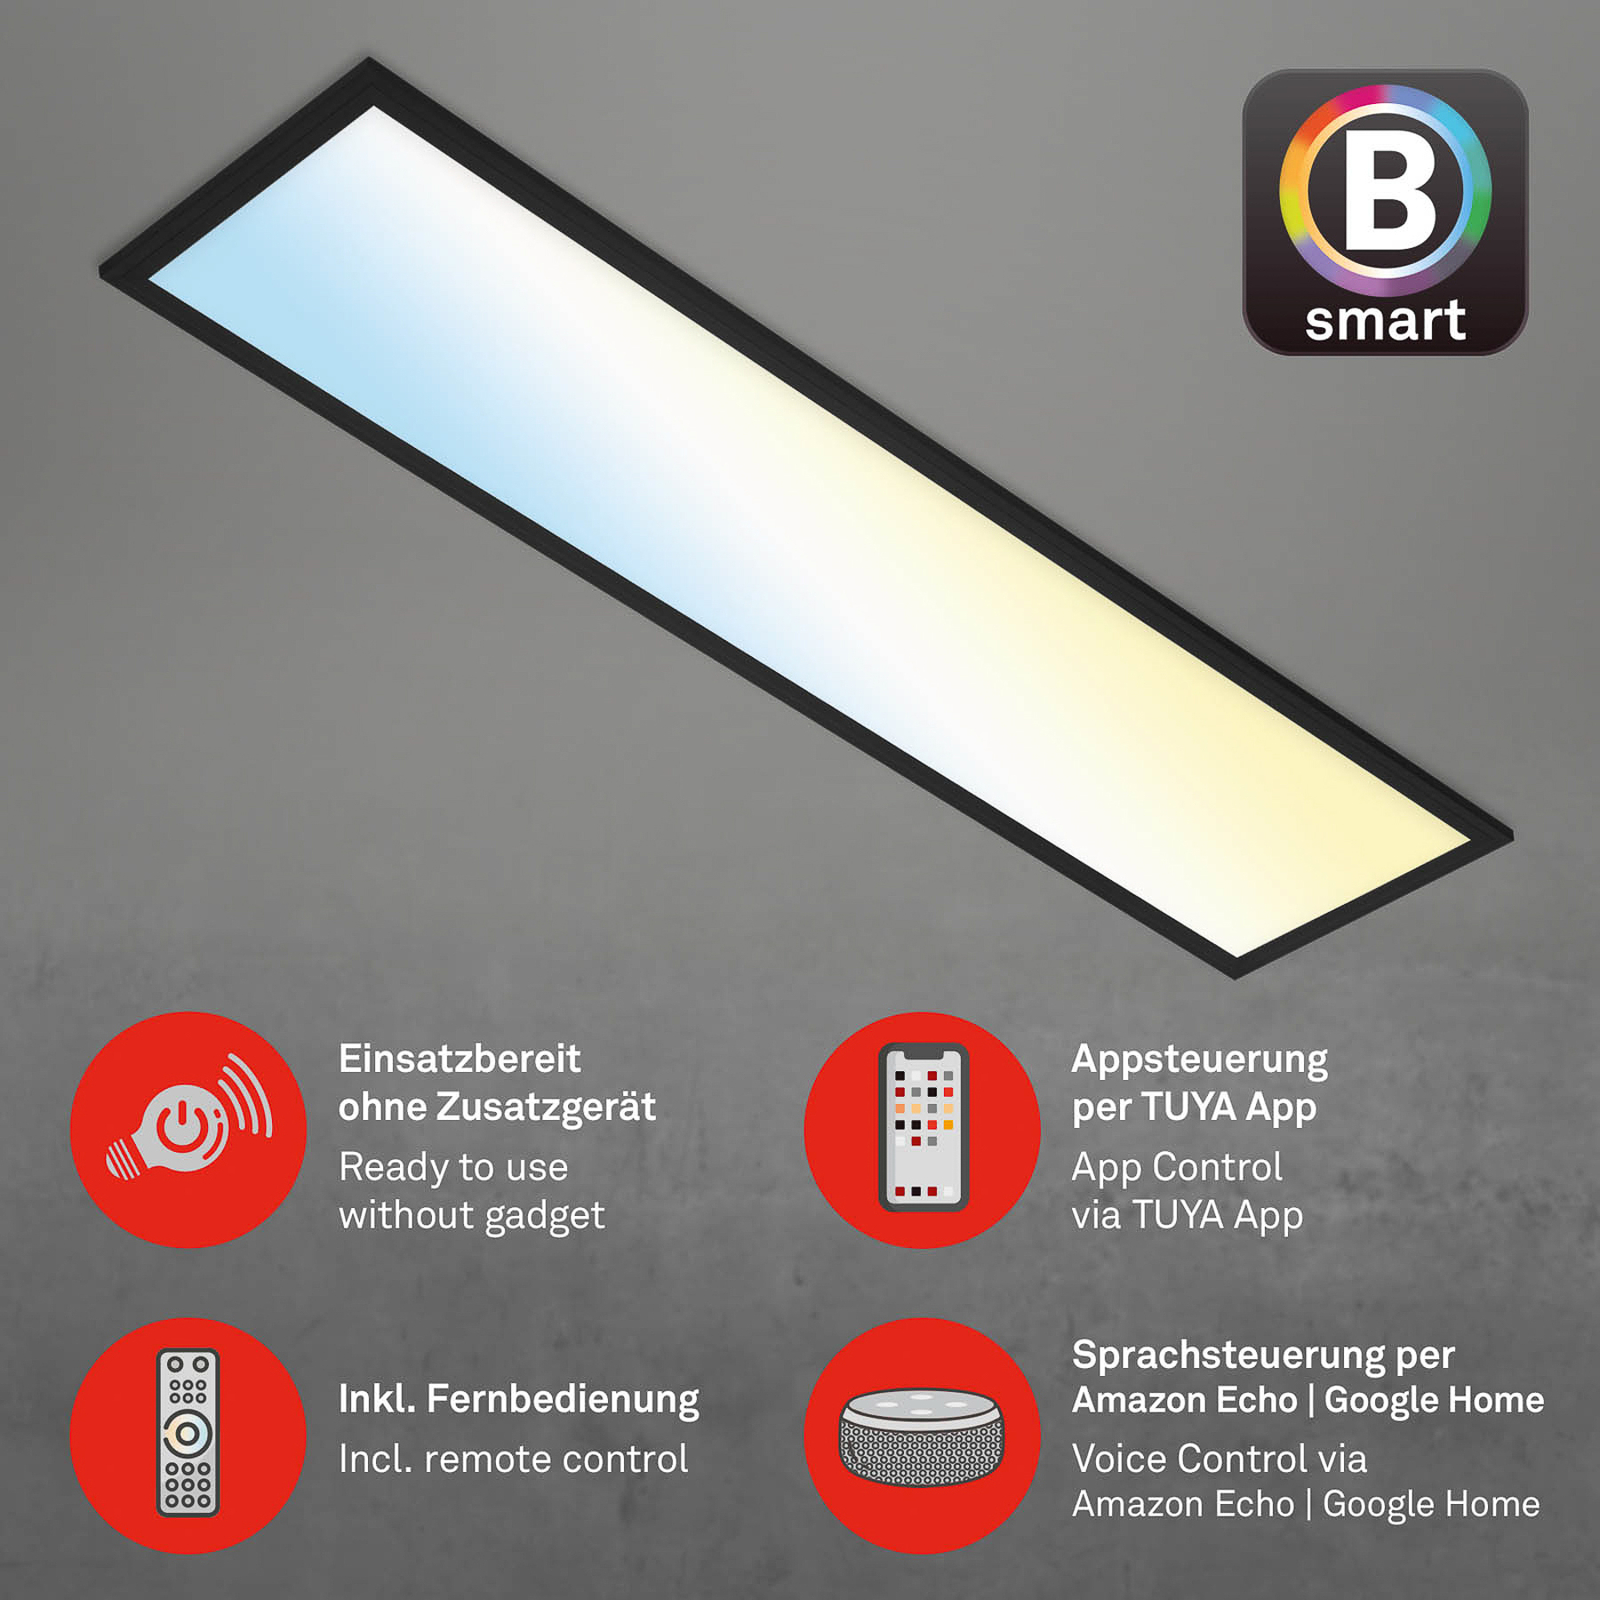 LED stropní světlo Piatto S WiFi Bluetooth CCT